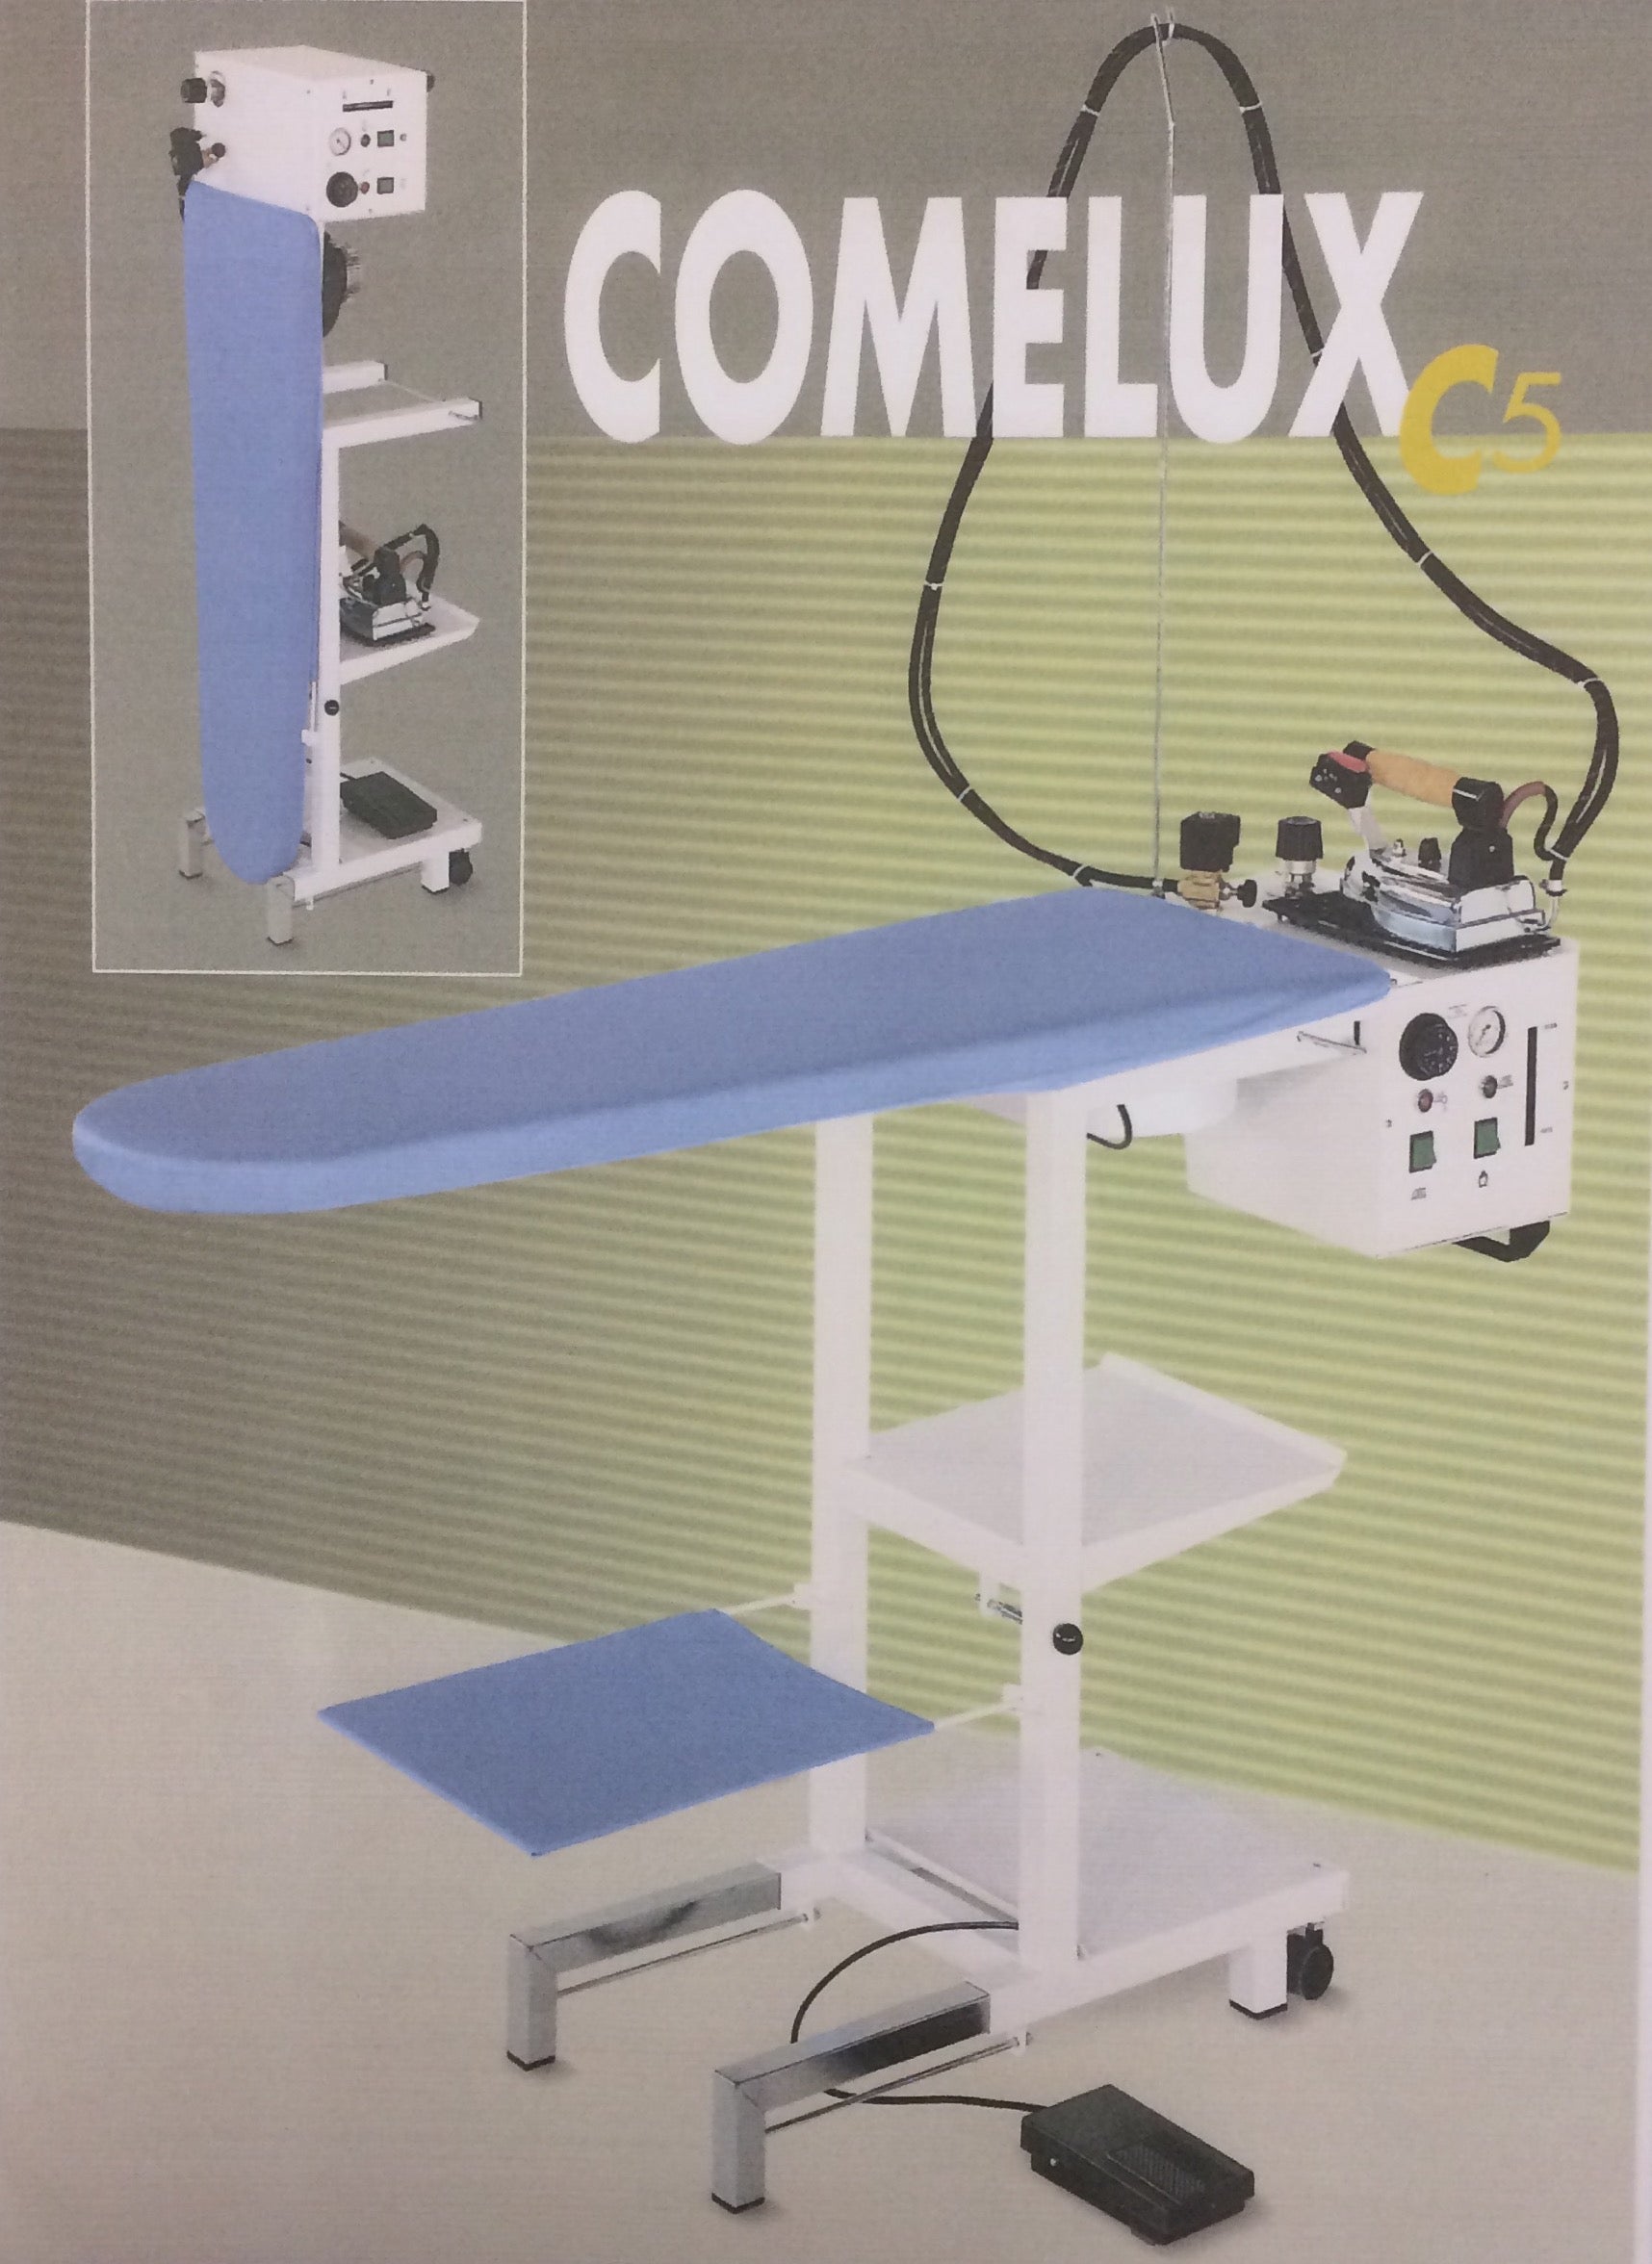 COMELUX C5, Table de repassage COMELUX C5 Comel - Frobert Matériel